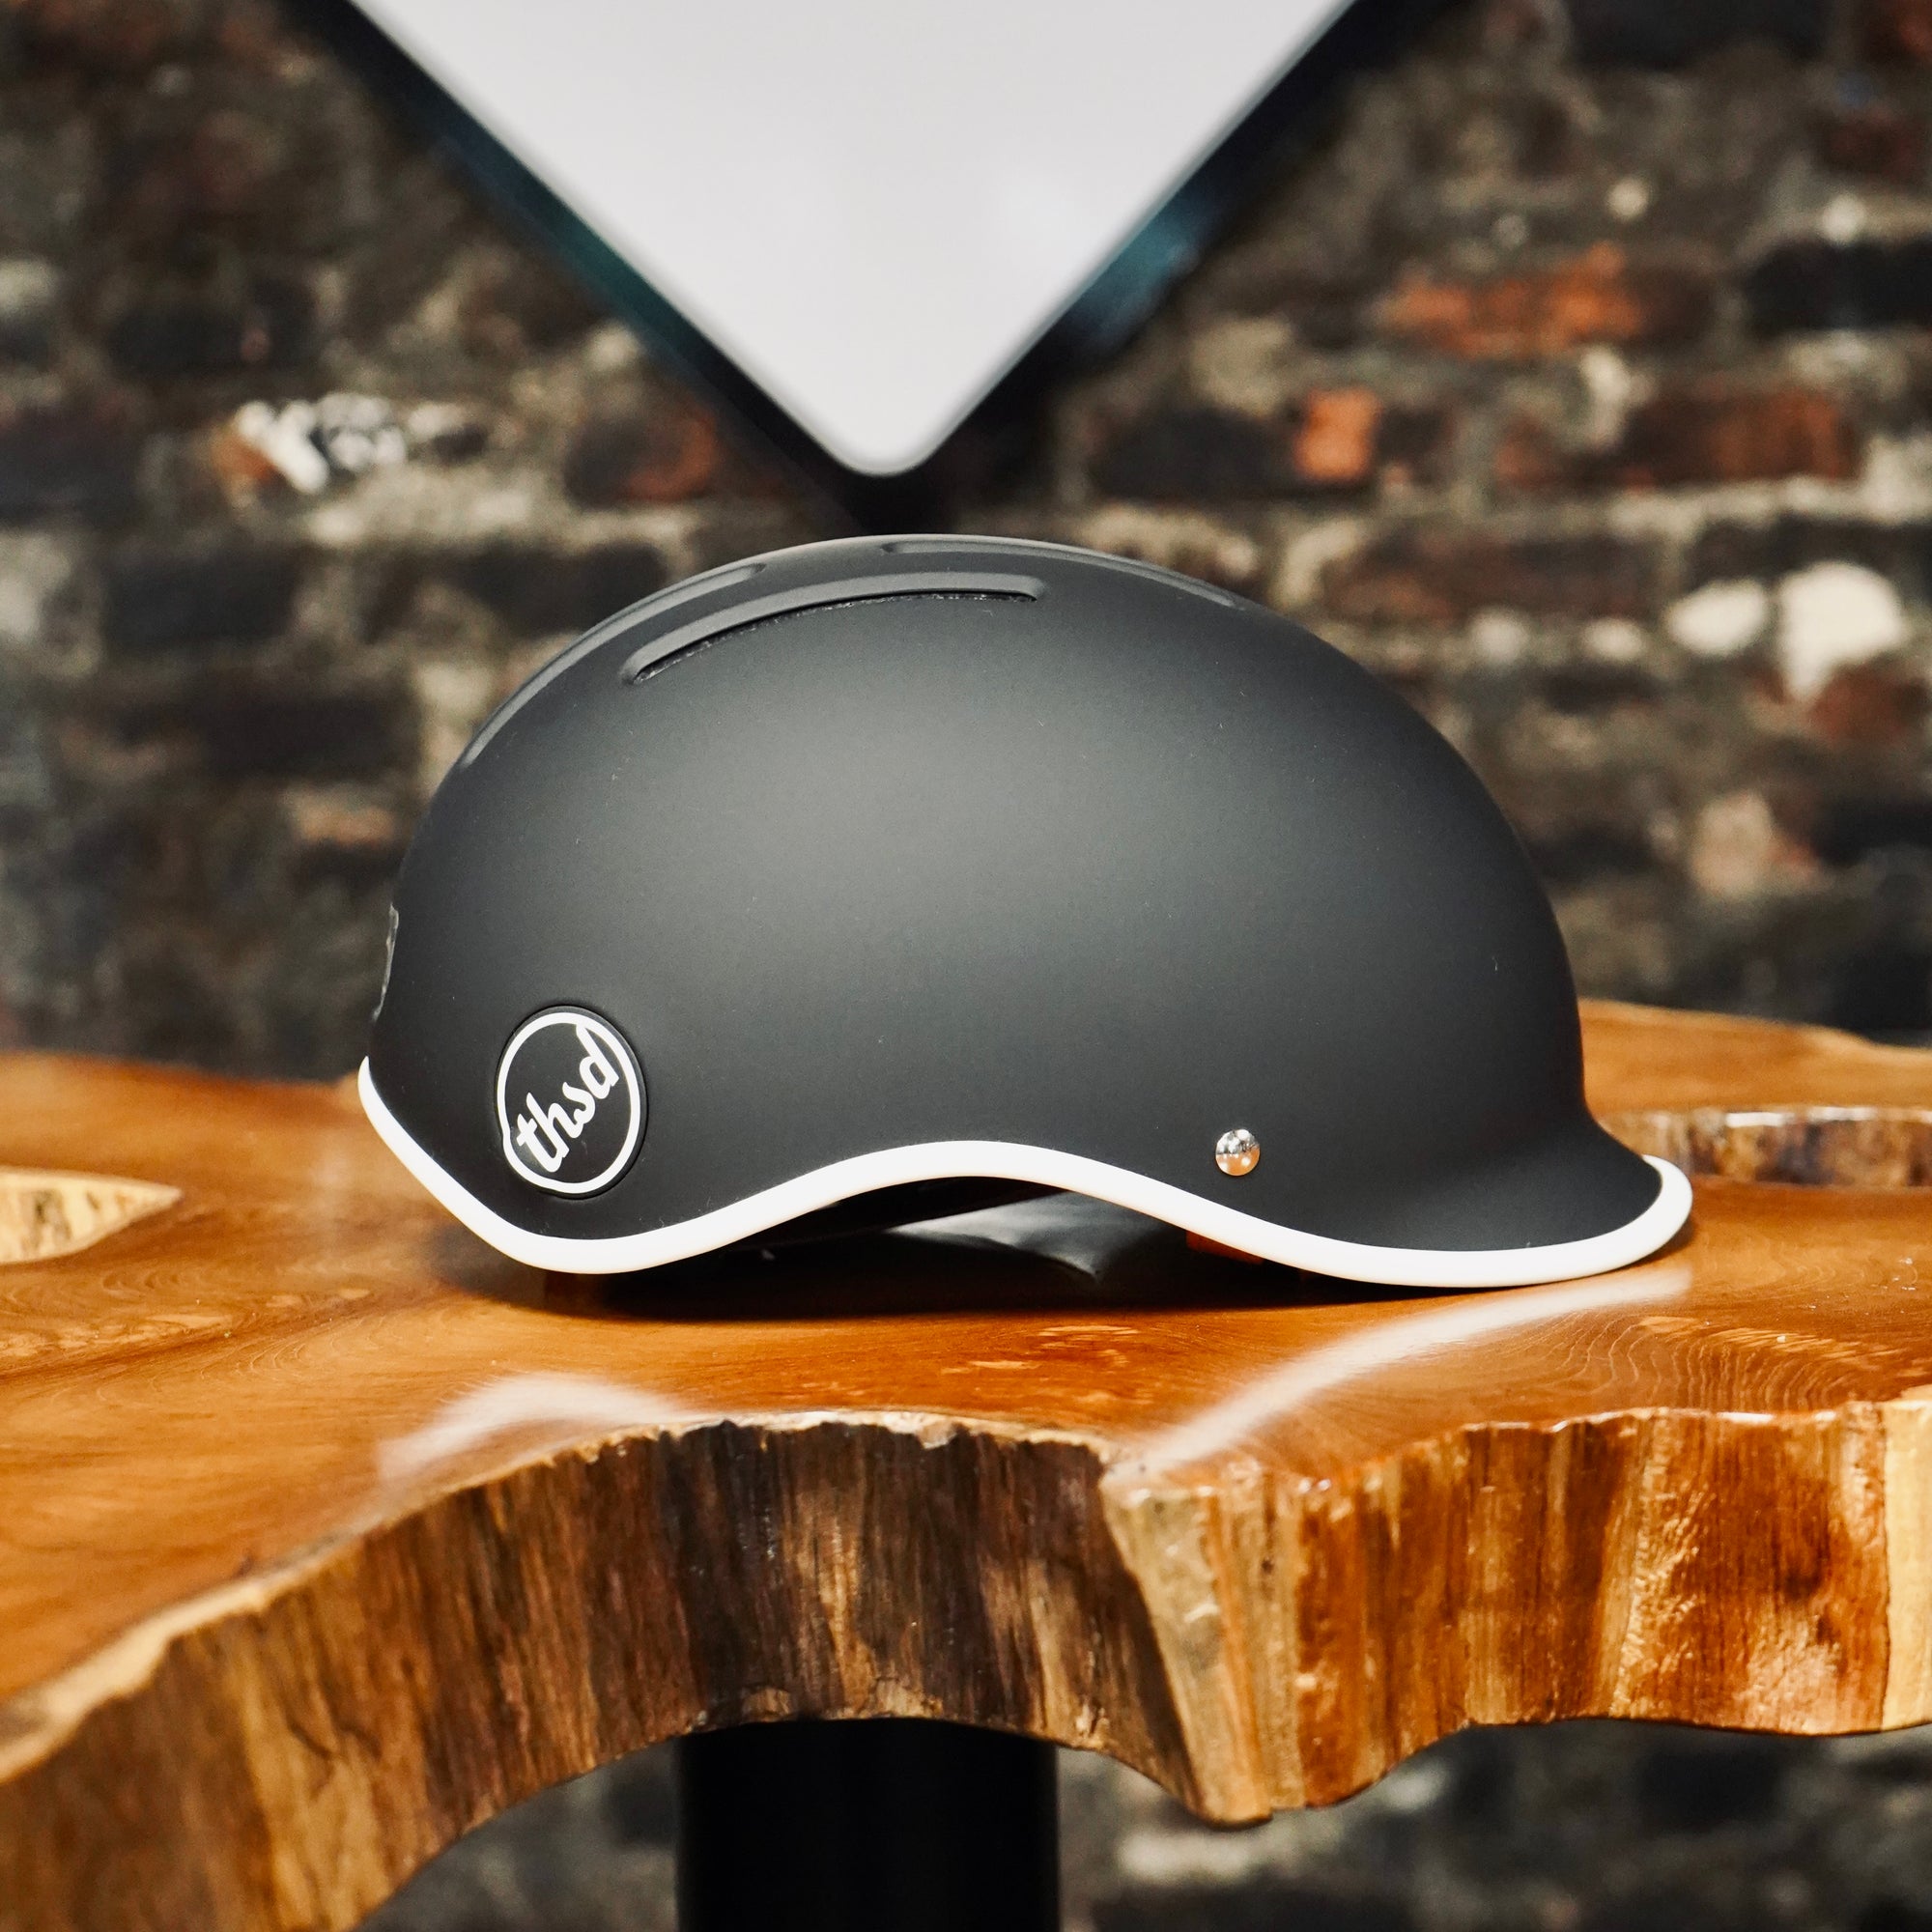 Thousand - Heritage 2.0 Bike & Skate Helmet